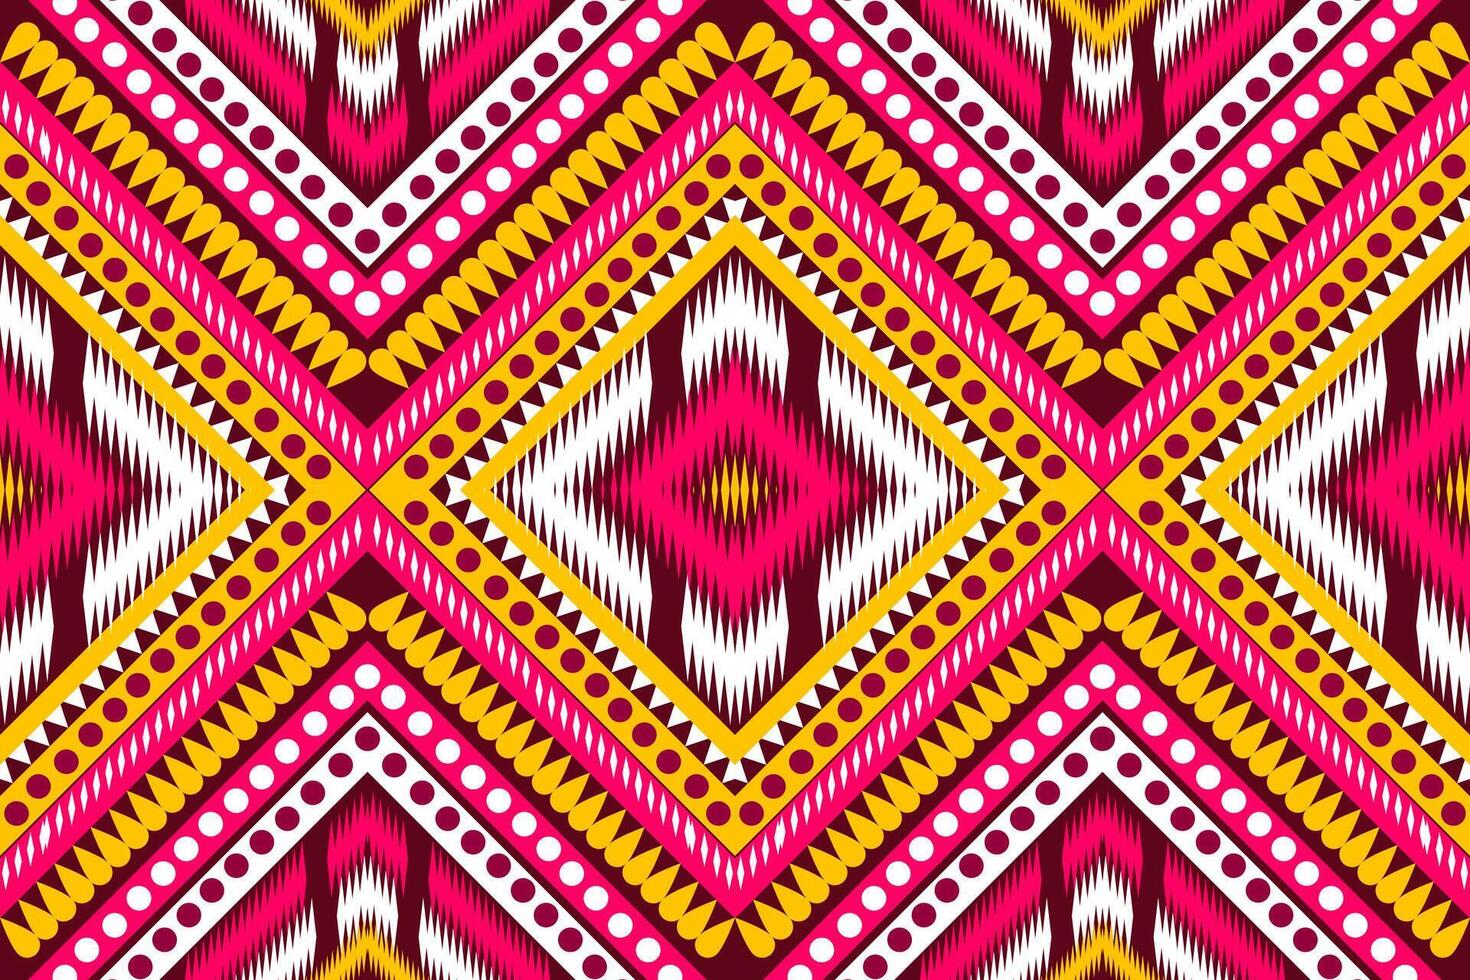 aztekisch Stammes- geometrisch Vektor Hintergrund im schwarz rot Gelb Weiß nahtlos Streifen Muster. traditionell Ornament ethnisch Stil. Design zum Textil, Stoff, Kleidung, Vorhang, Teppich, Ornament, Verpackung.